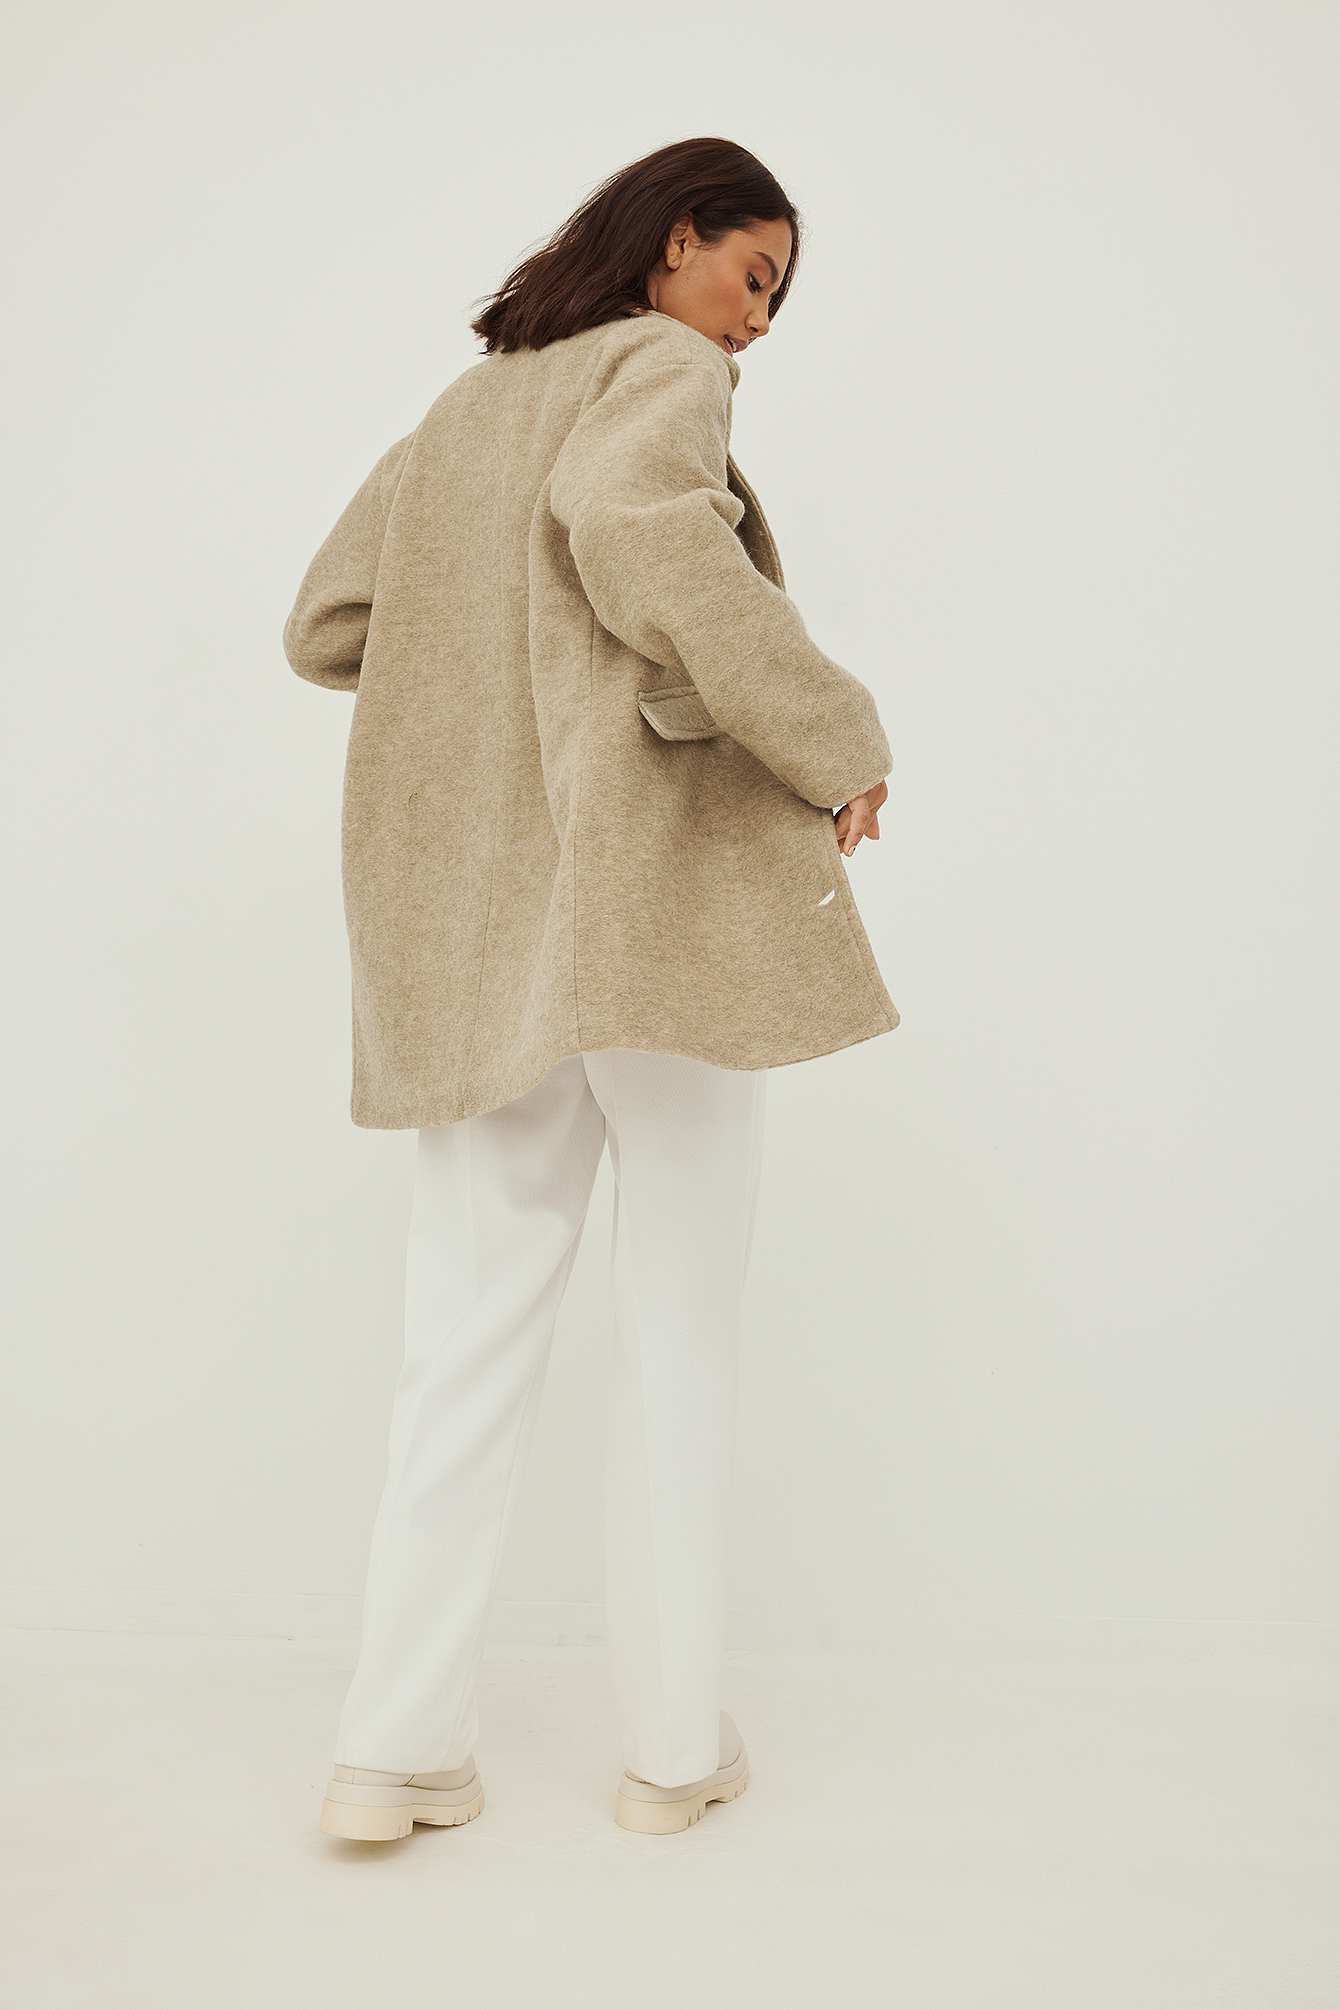 NA-KD x Angelica Blick wool blend coat in beige